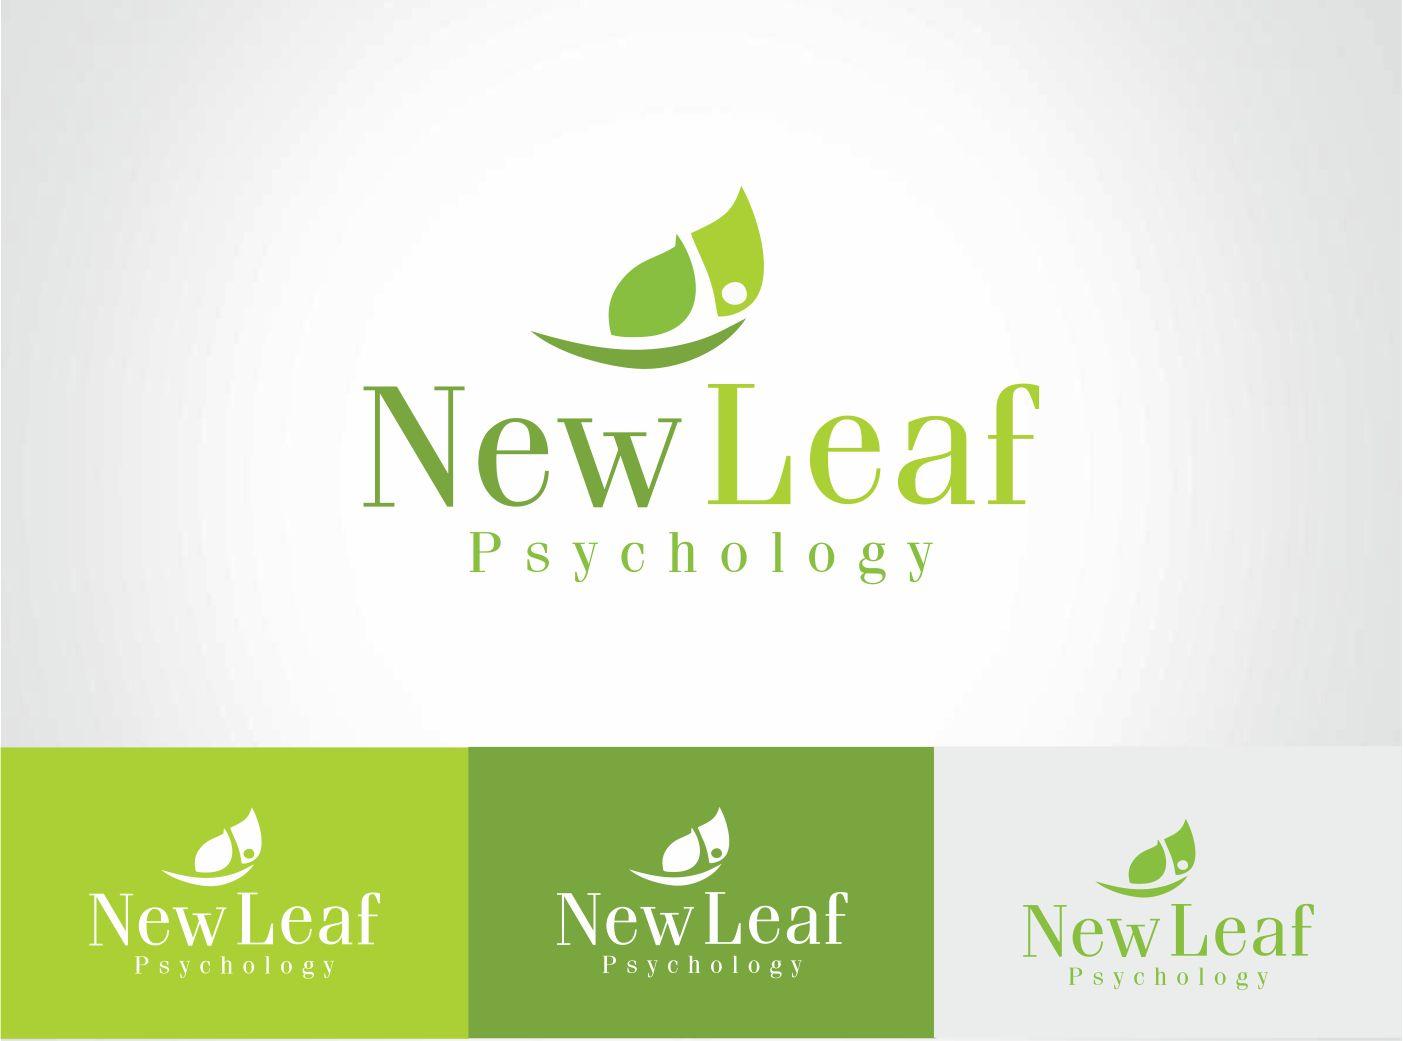 New Leaf Logo - Colorful, Playful, Clinic Logo Design for New Leaf Psychology